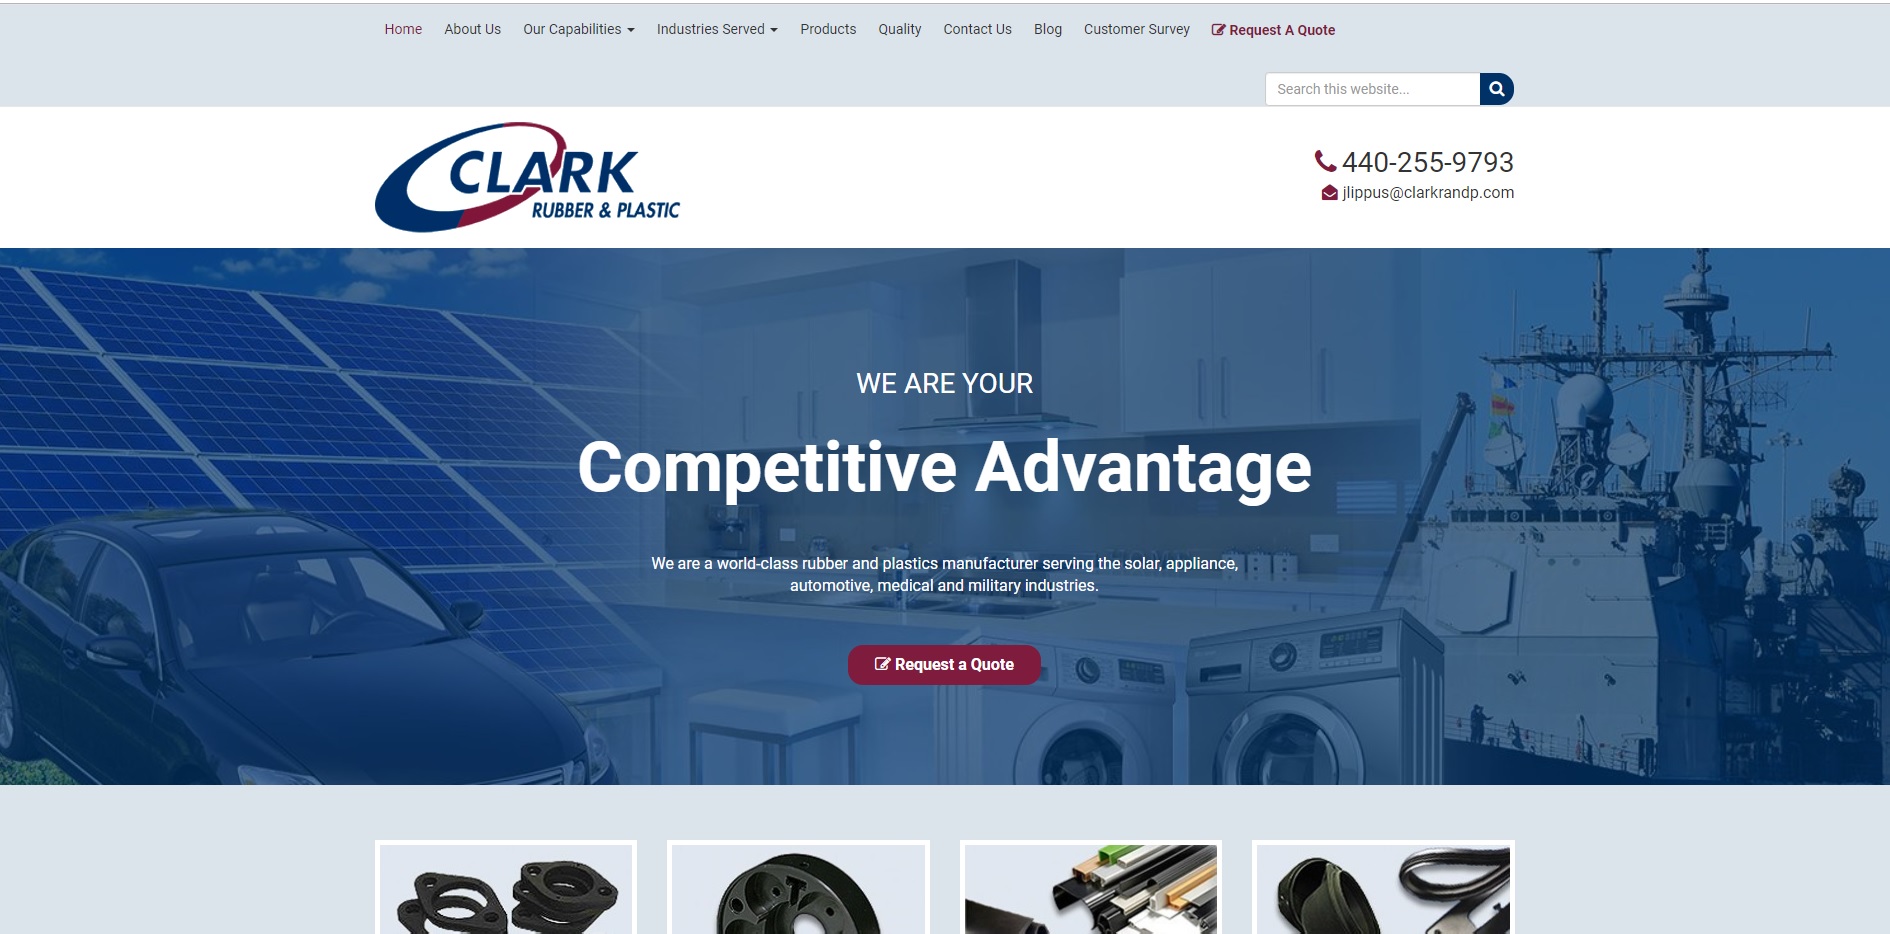 Clark Rubber & Plastic Company